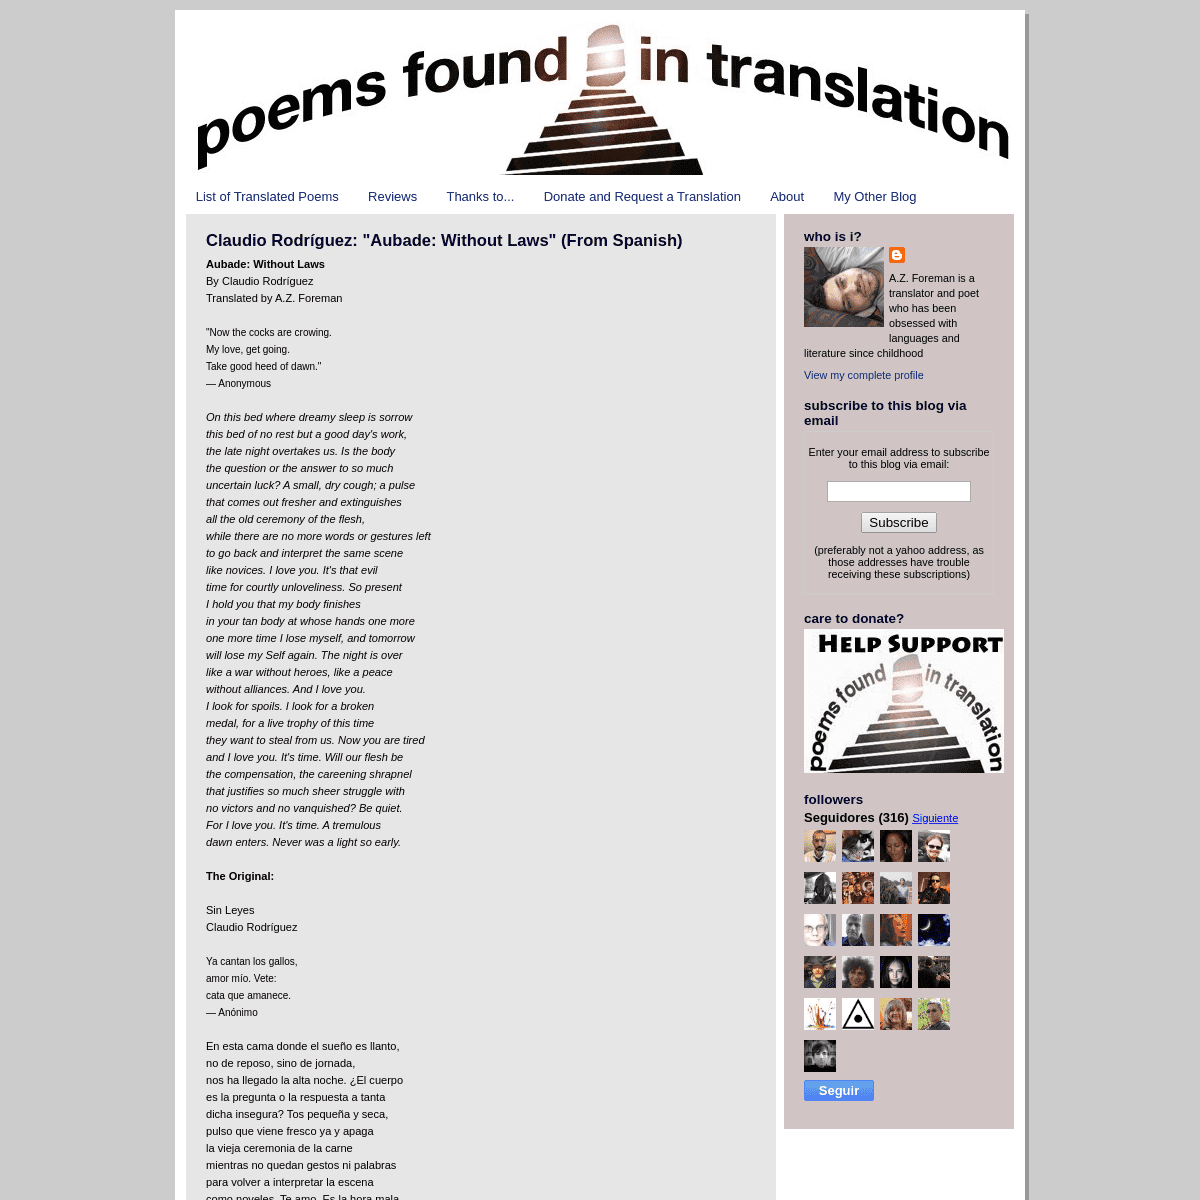 A complete backup of poemsintranslation.blogspot.com